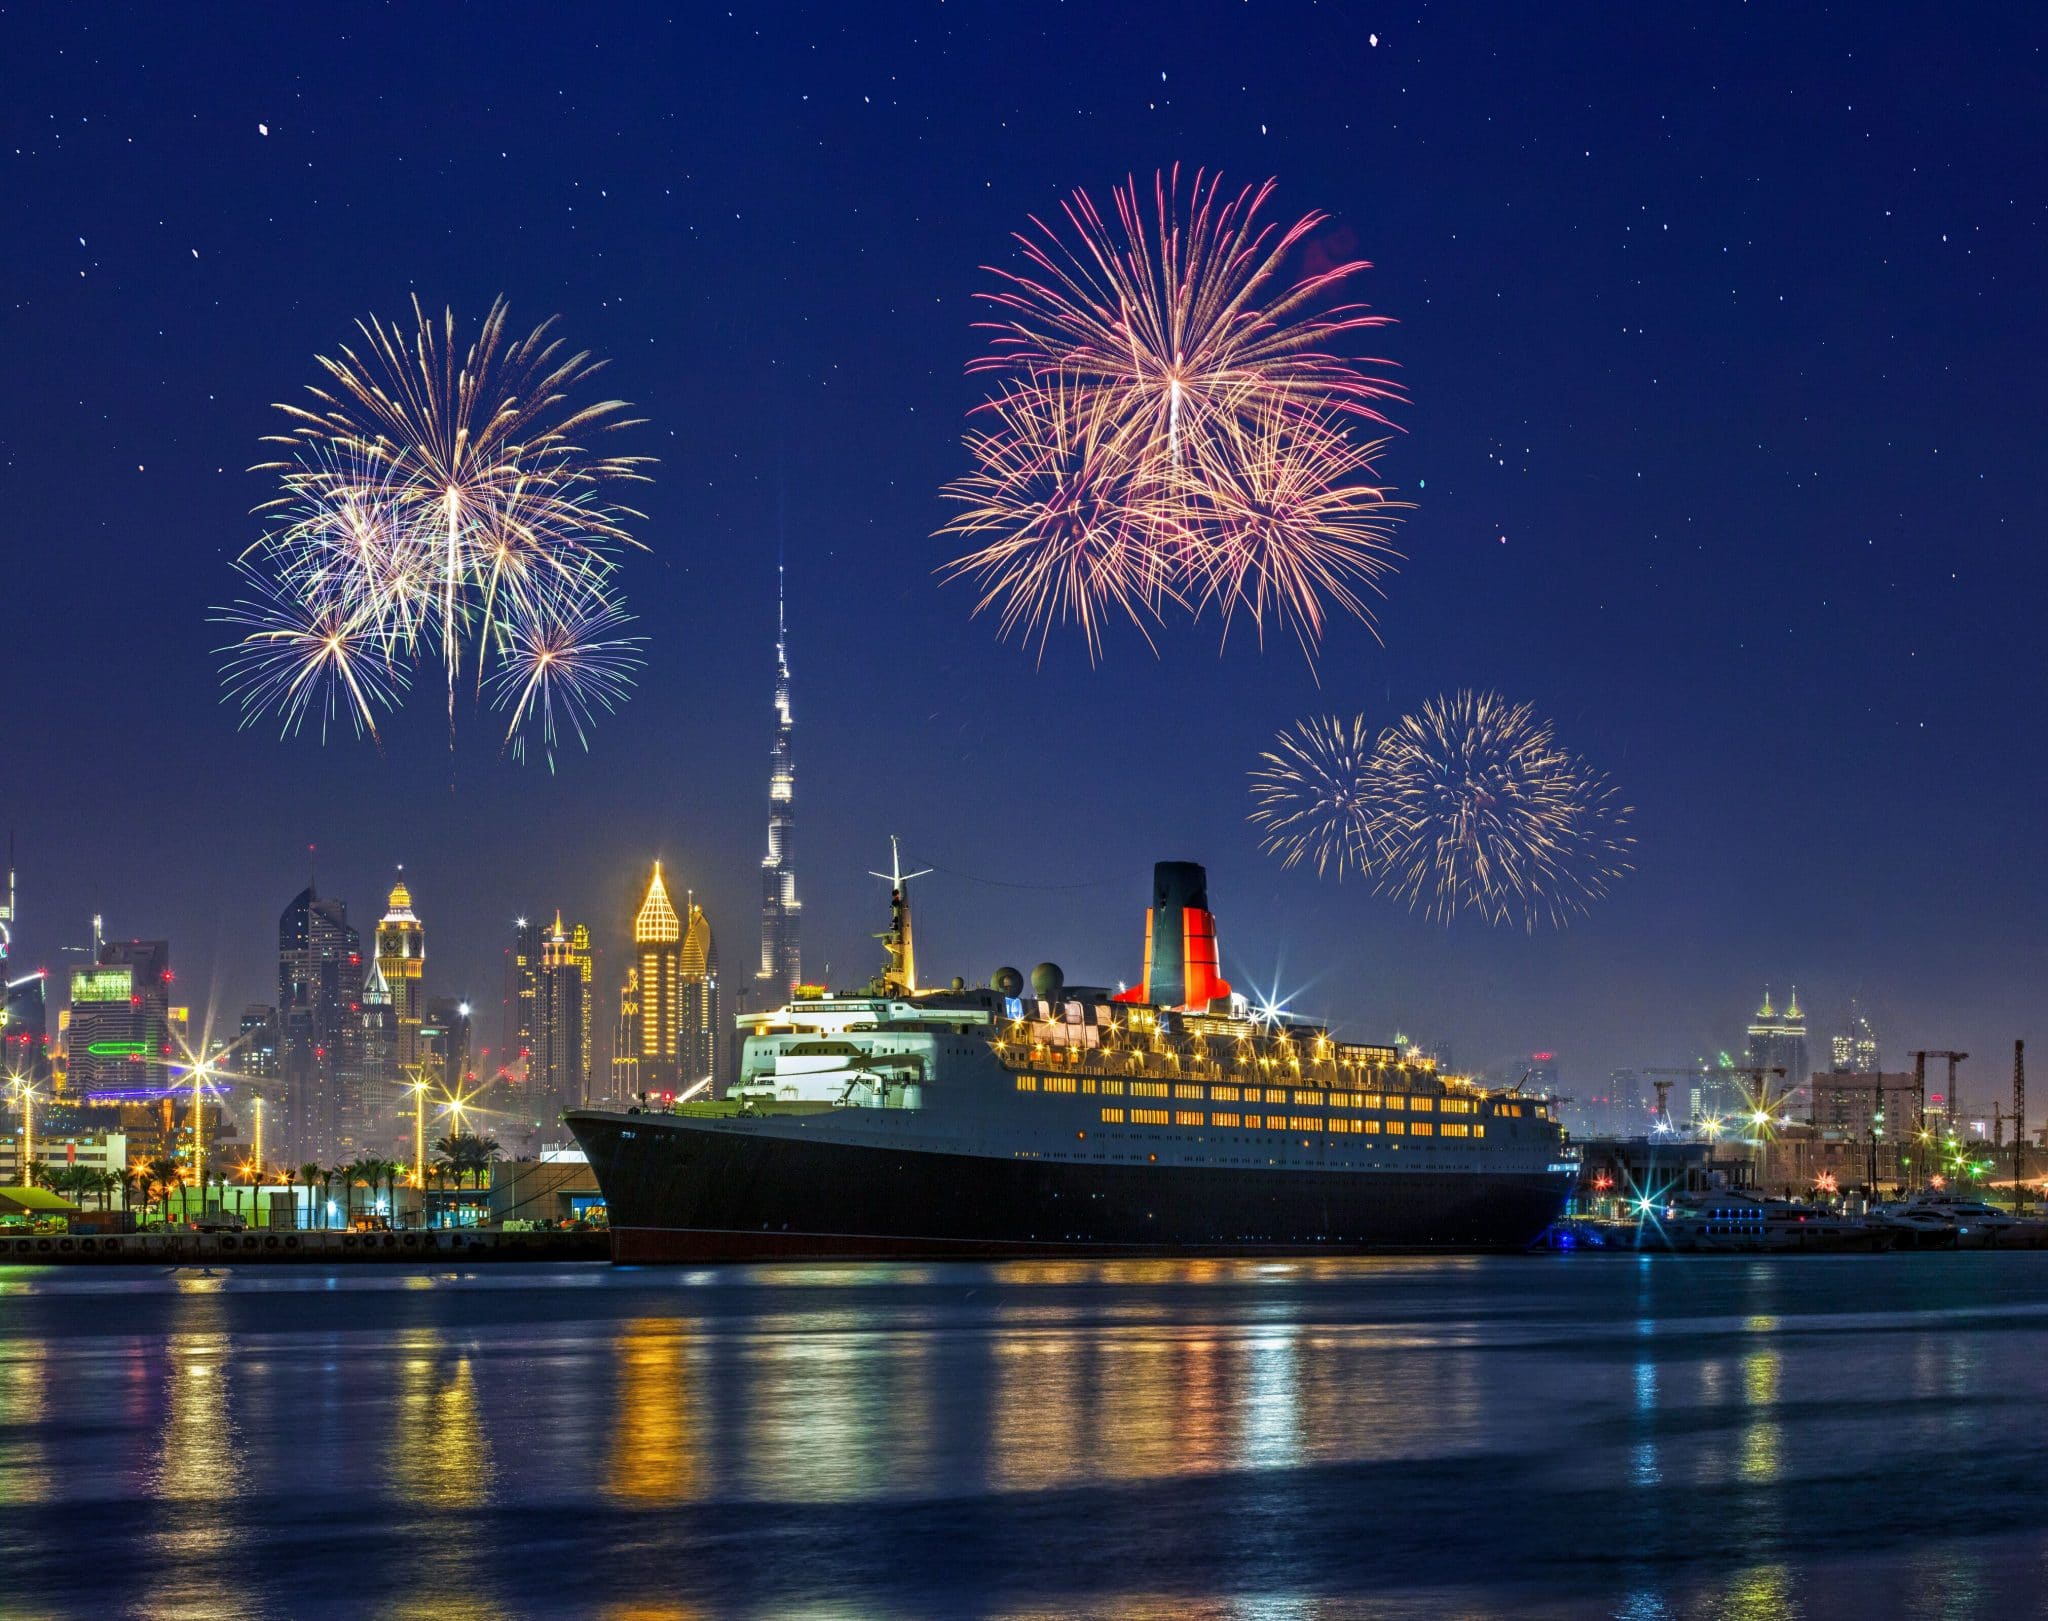 عروض سفينة الملكة إليزابيث 2 إحتفالاً برأس السنة 2020